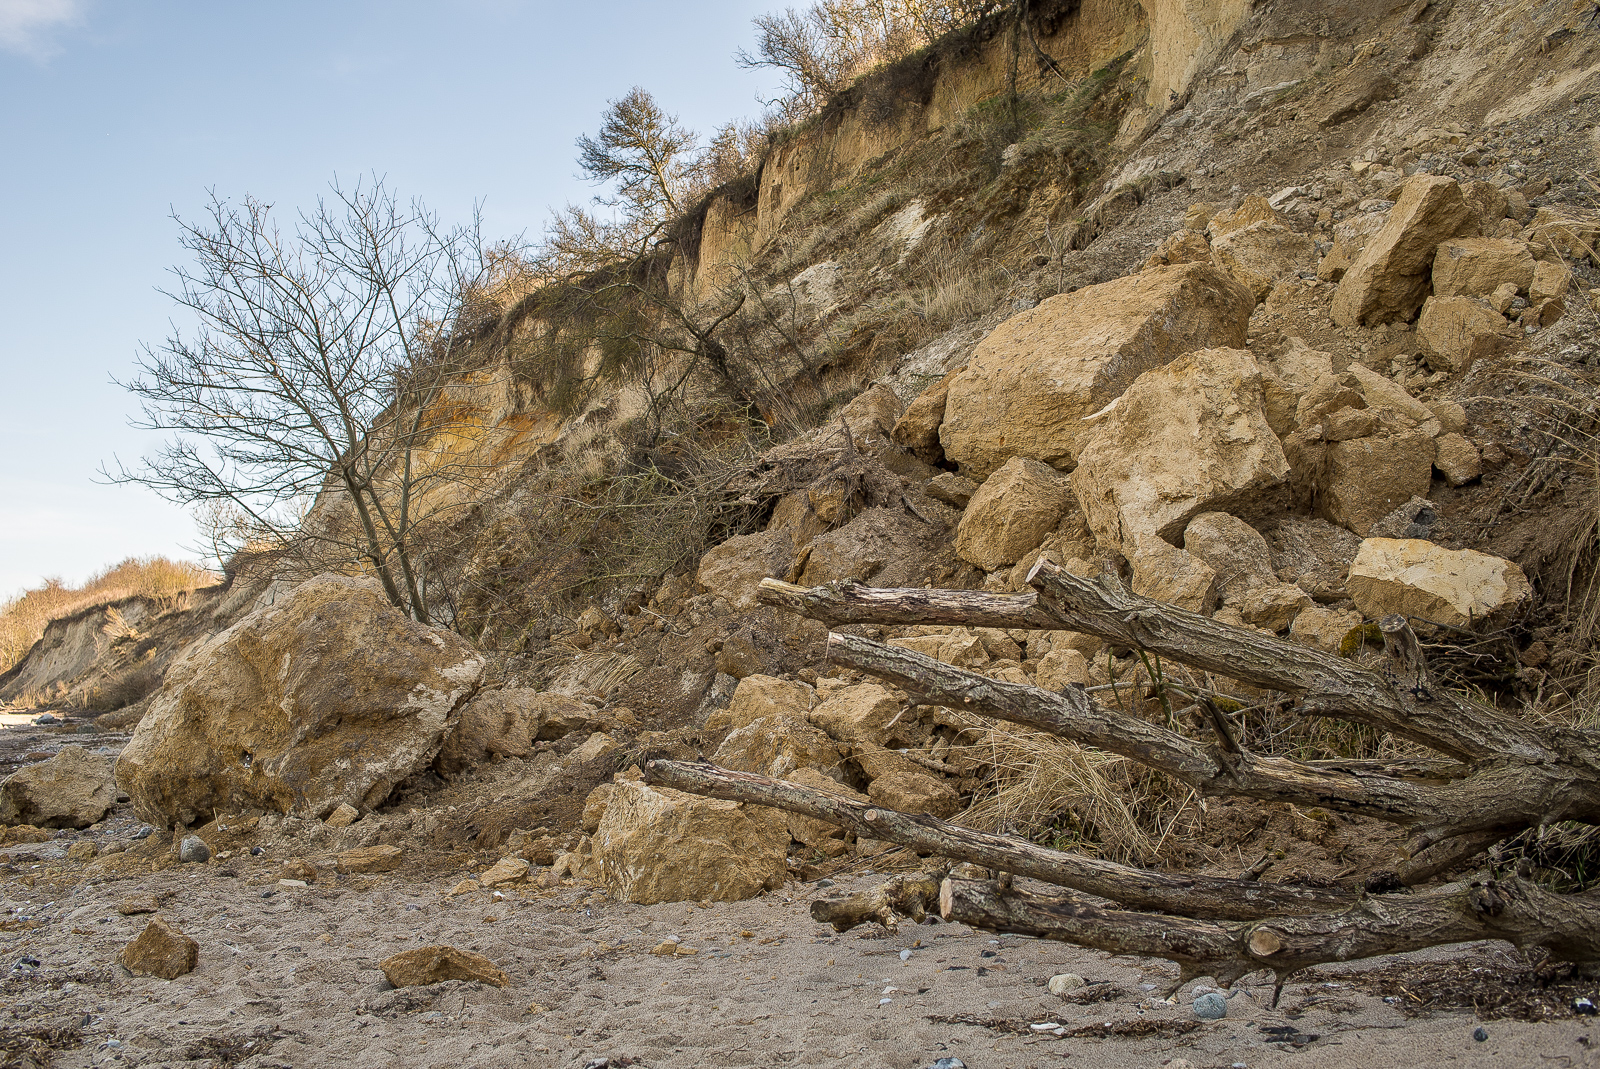 Steilküste mit großen Felsbrocken und umgestürztem Baum an der Abbruchkante